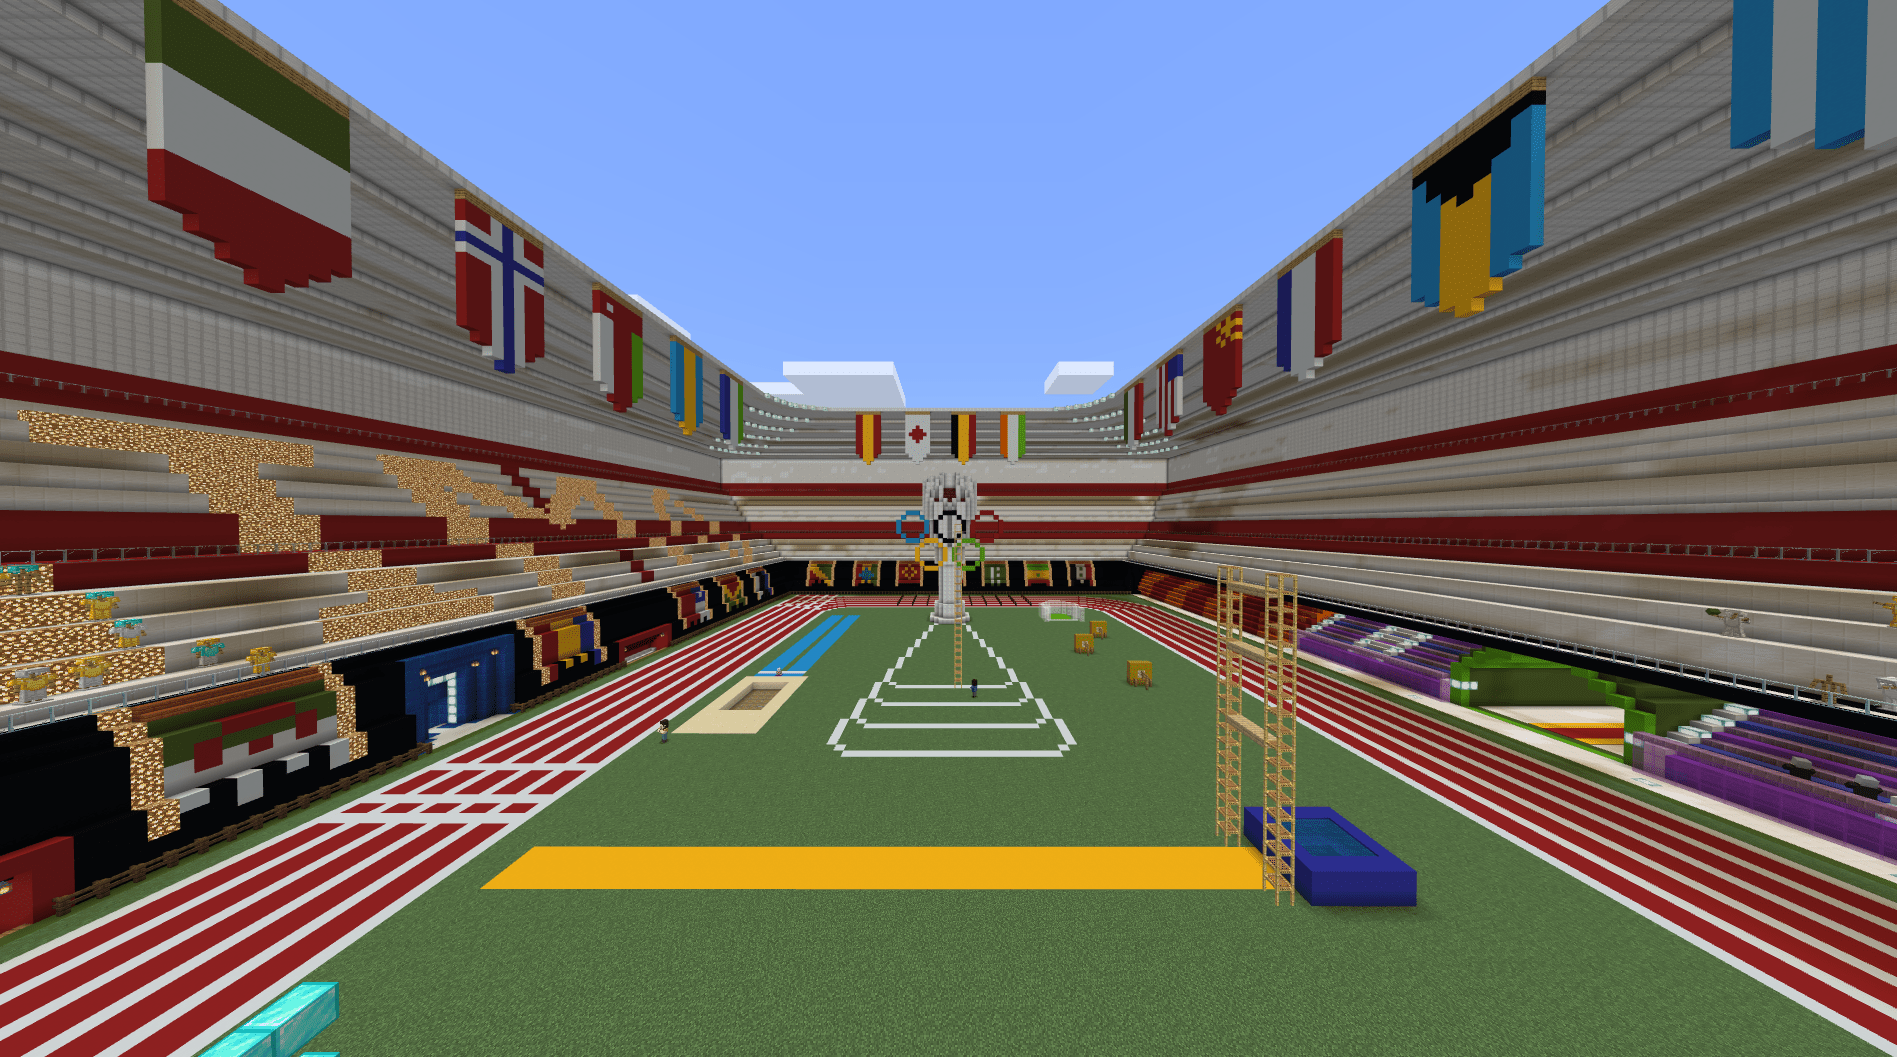 Imagen de un estadio en Minecraft con pruebas olímpicas